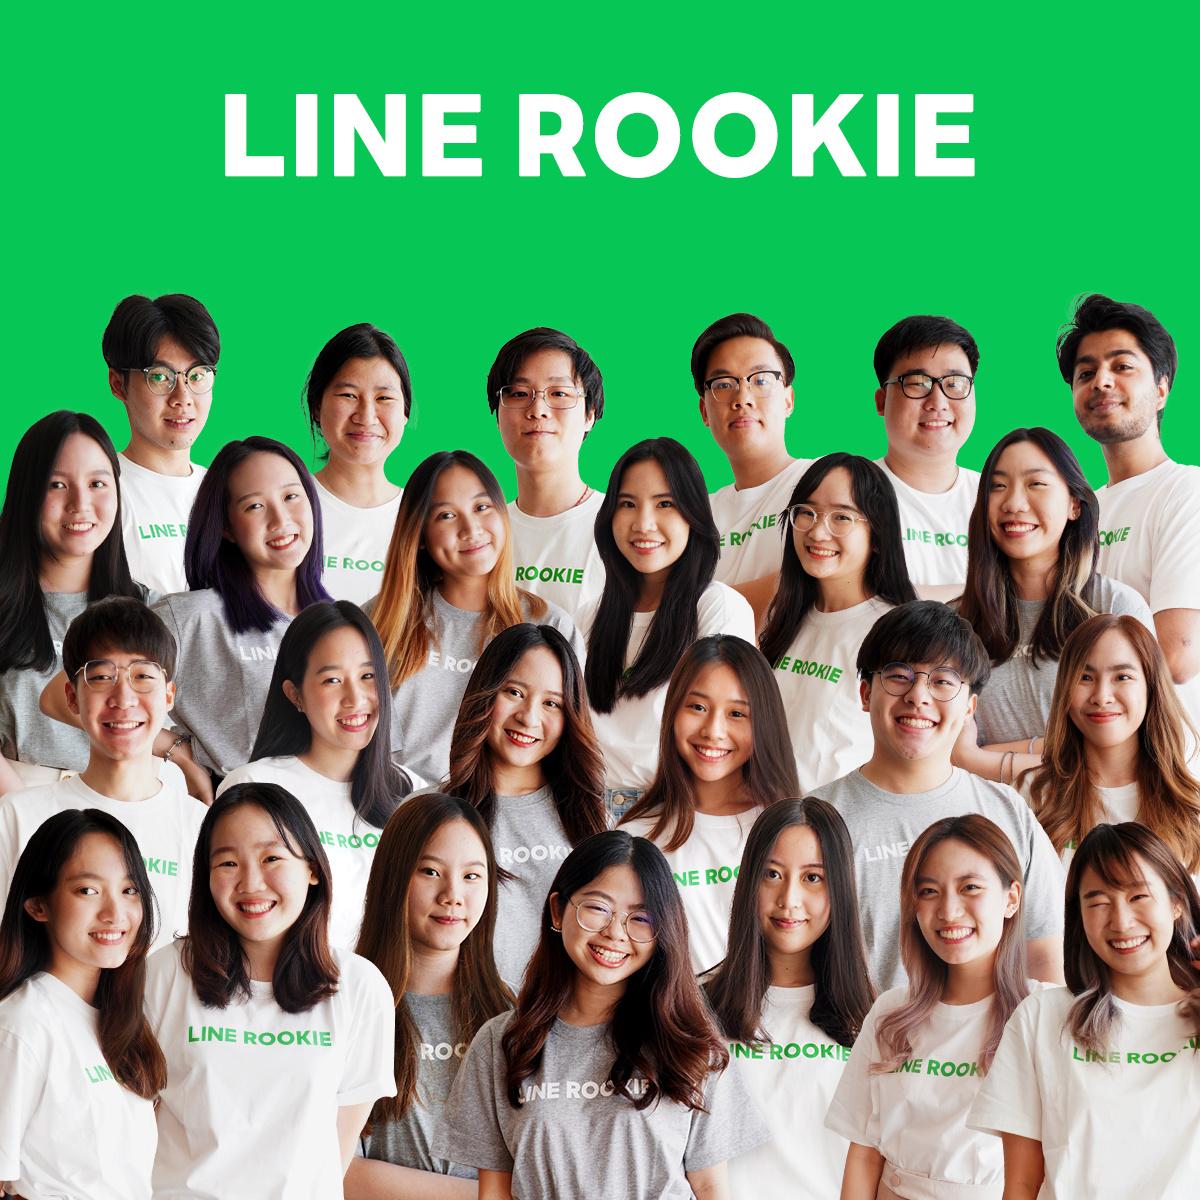 เปิดแนวคิดการฝึกงานในฝันของเด็ก Gen Z ในโปรเจค LINE ROOKIE โดย LINE ประเทศไทย ถ้าพร้อมลุย มาฝึกกับเรา! เปิดรับสมัครรุ่นปี 2022 แล้ววันนี้